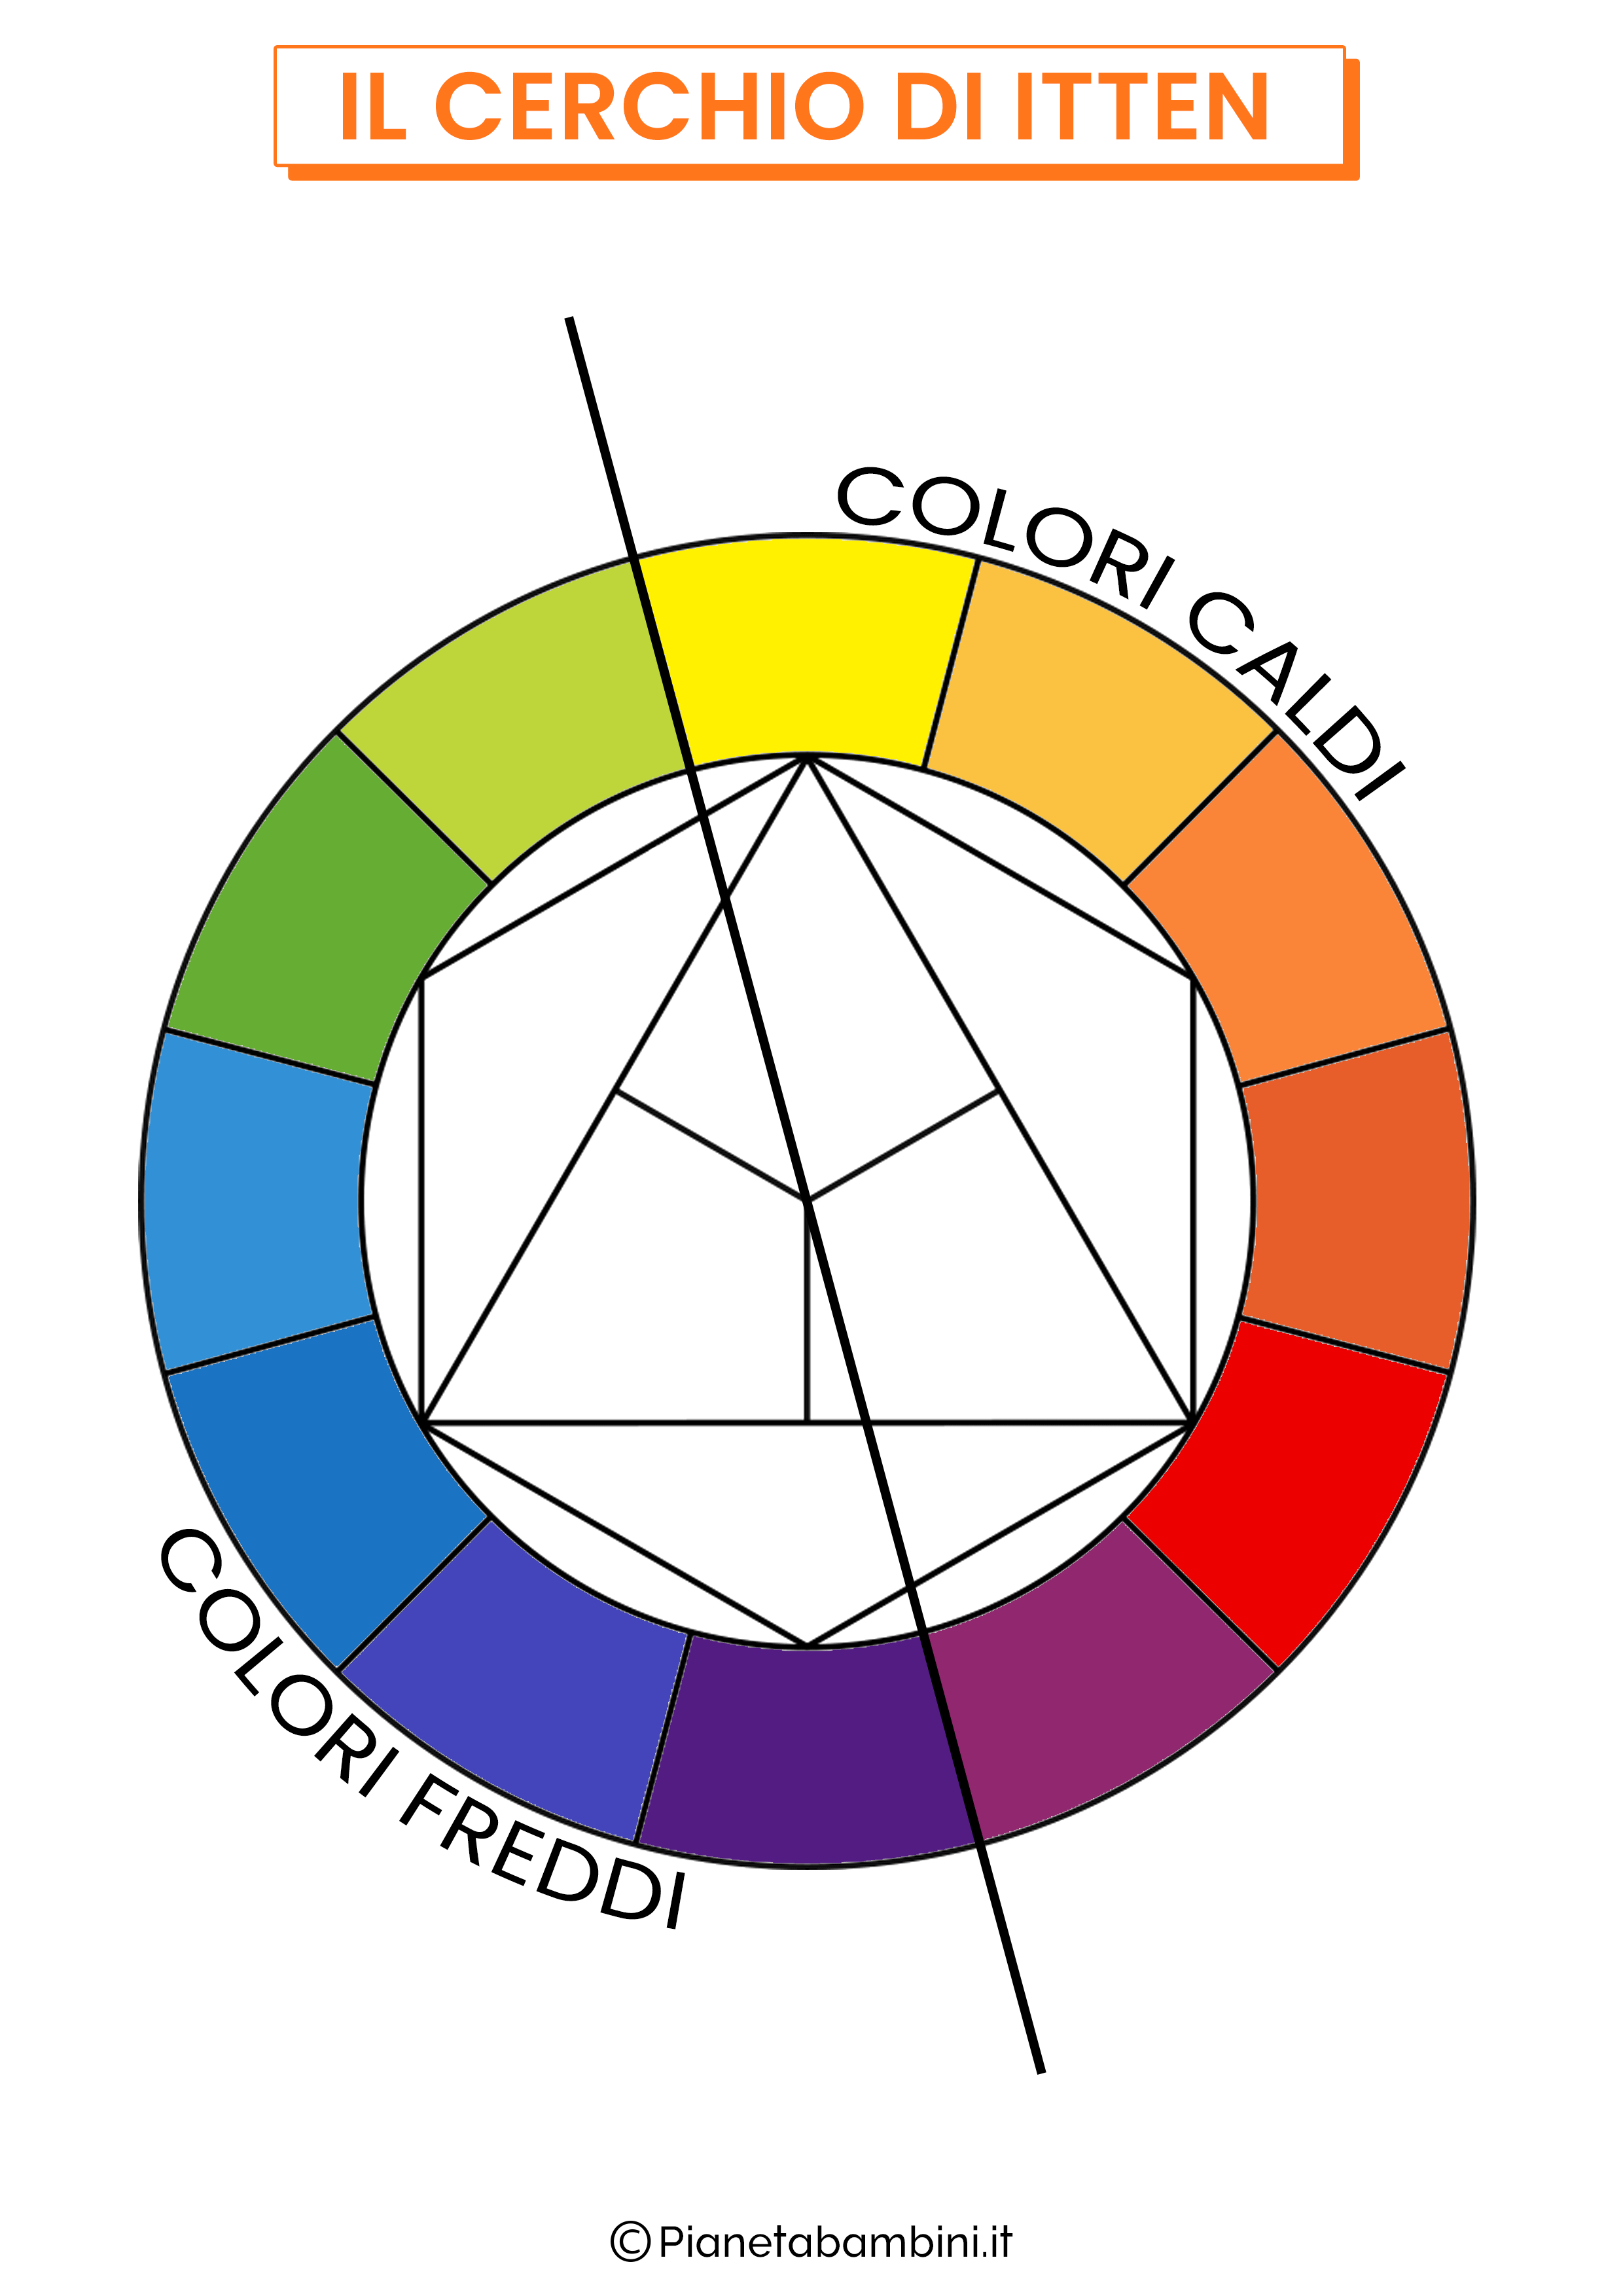 Cerchio dei colori di Itten colori caldi e freddi